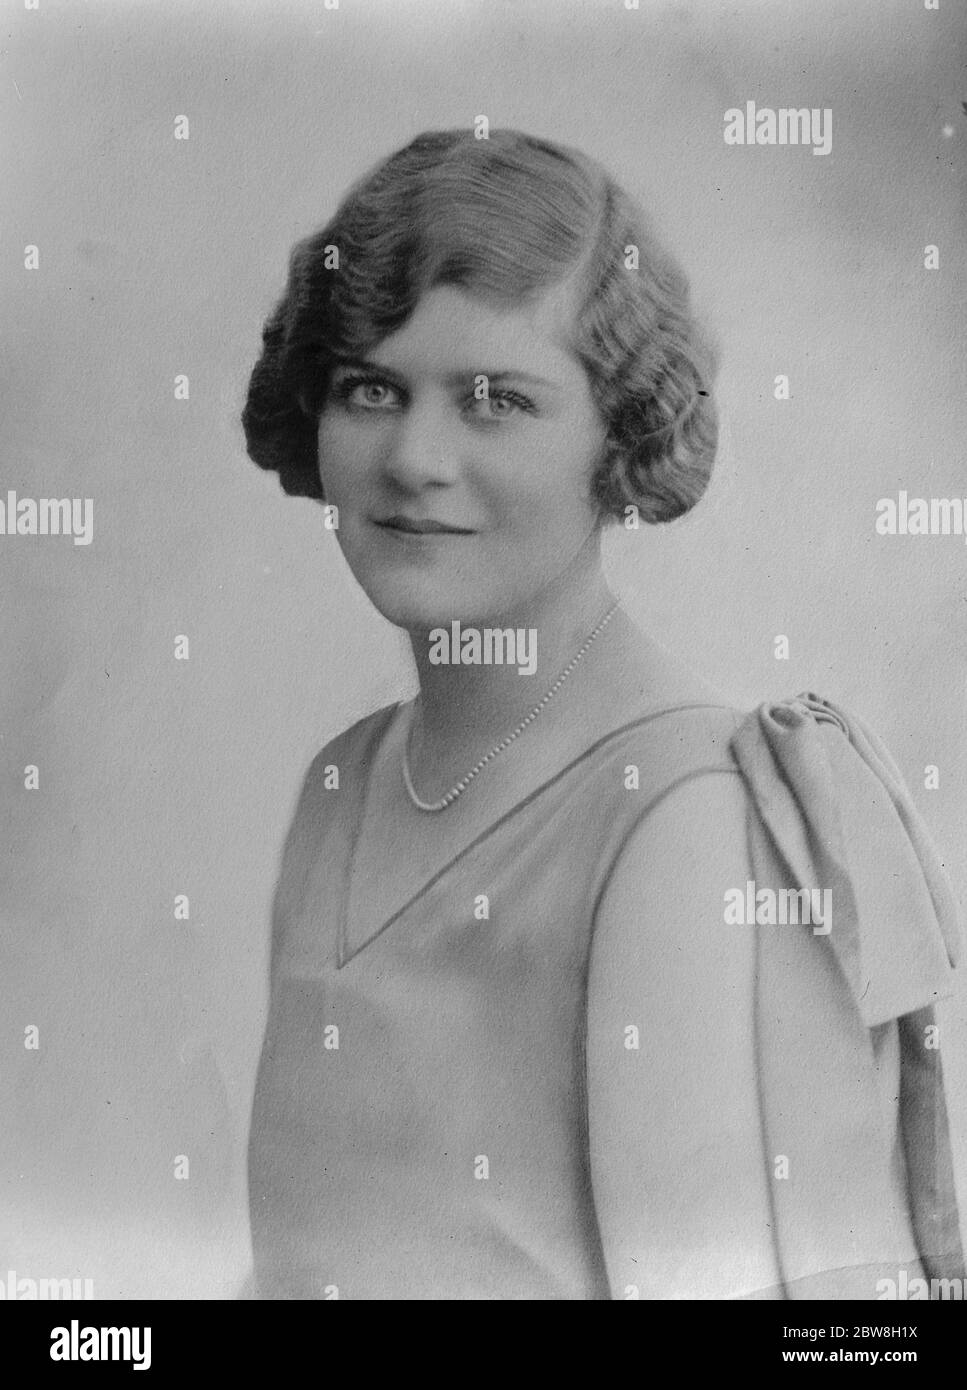 La hija de Sir Samuel y Lady Instone se involucró. Sra. Mary Instone , hija de Sir Samuel y Lady Instone , que está comprometida con el Sr. Leo Gallop , de Hampstead . 1933 Foto de stock